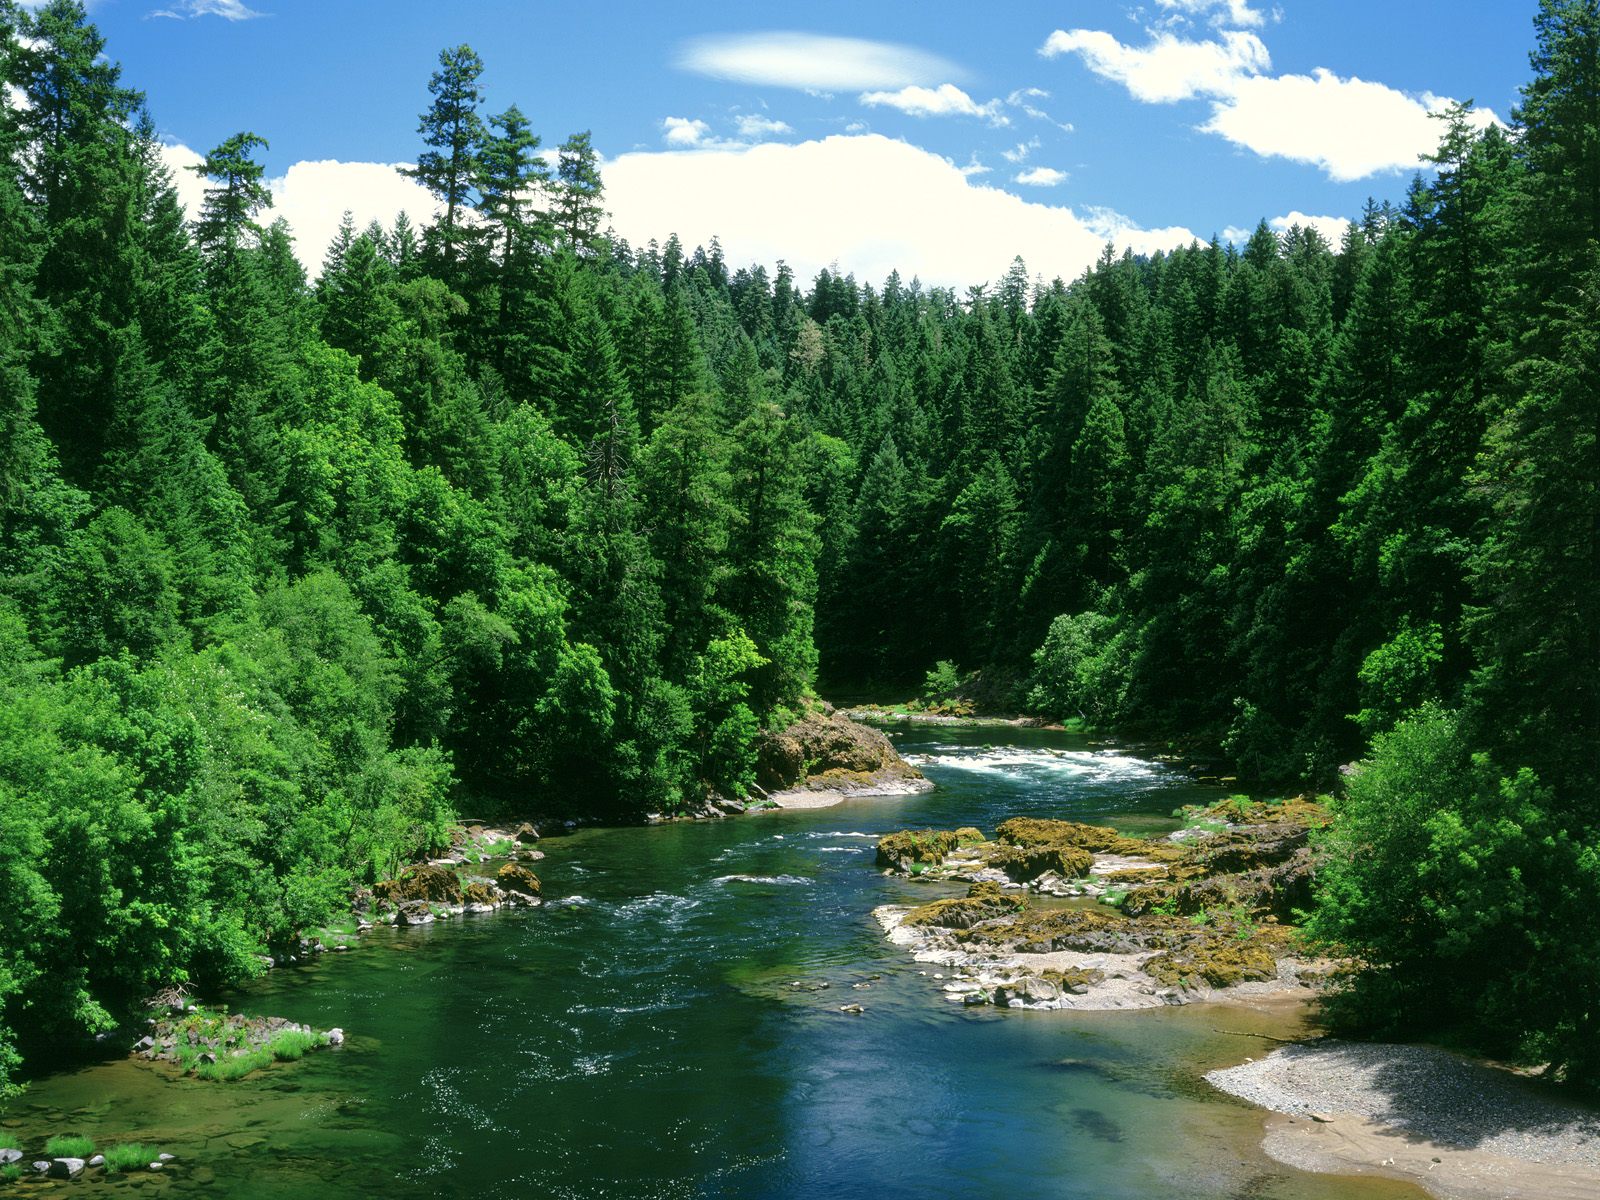 río de pantalla en vivo,cuerpo de agua,recursos hídricos,paisaje natural,naturaleza,río